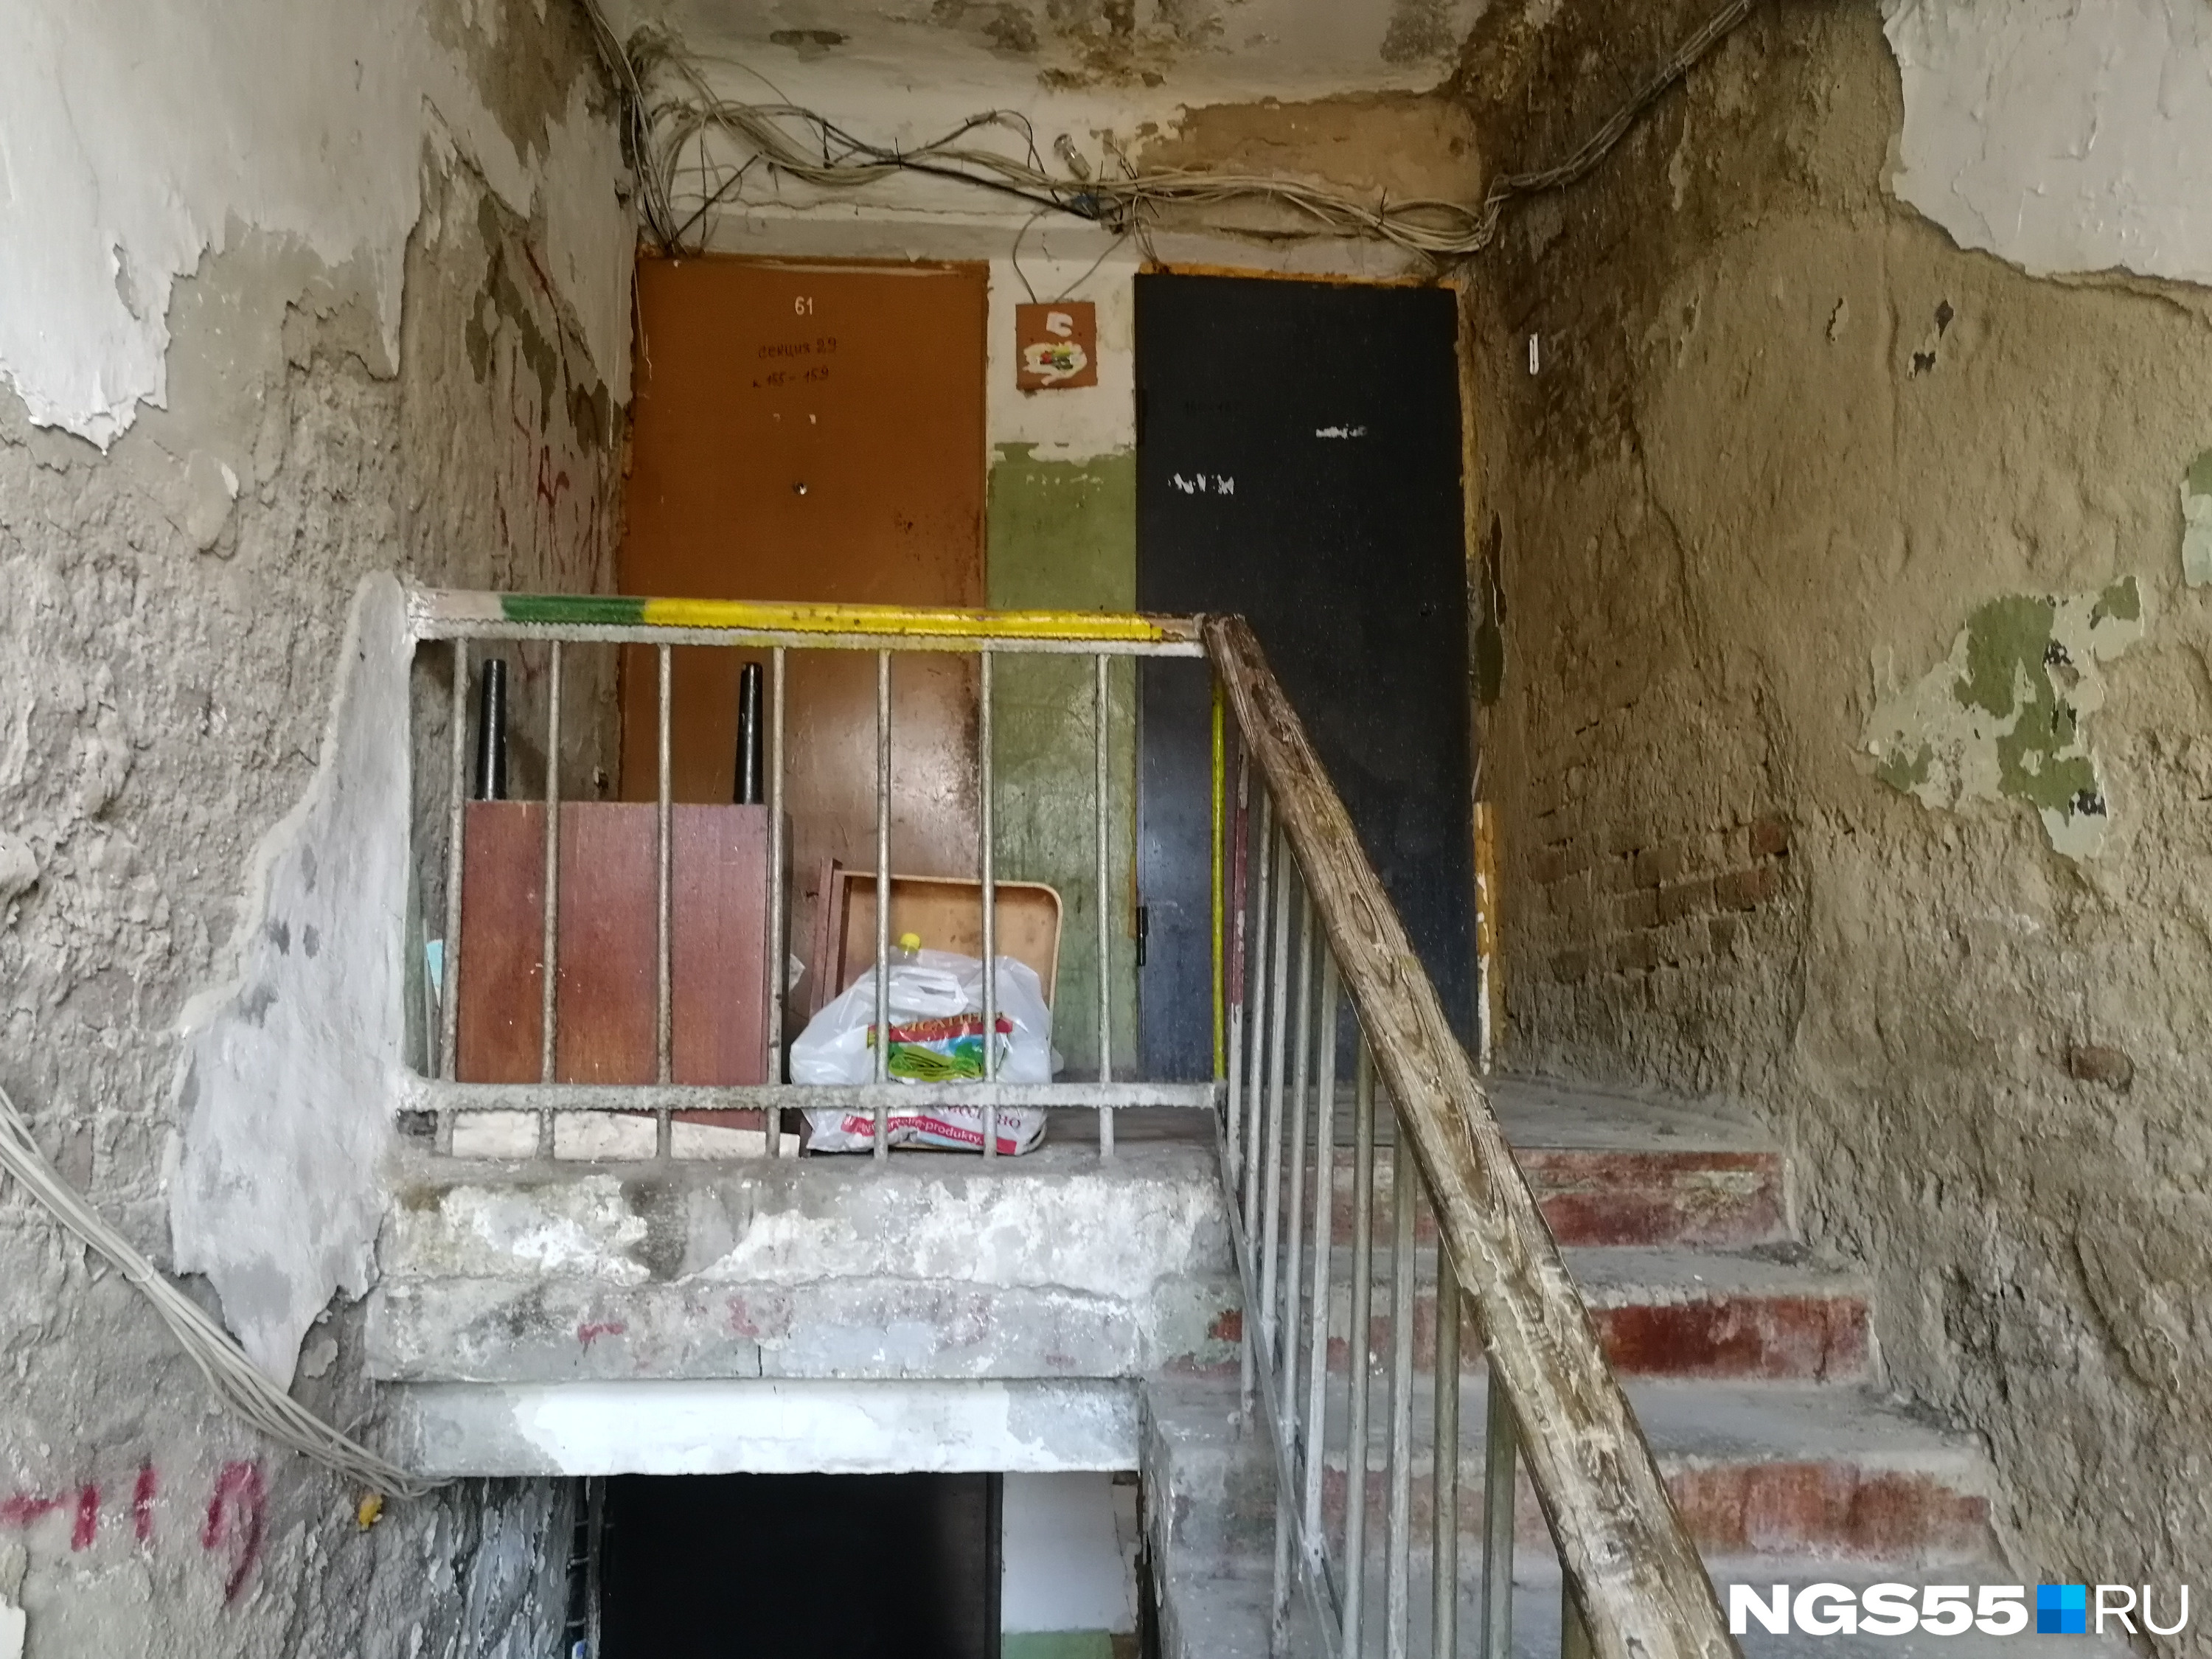 В мэрии Омска пришли к выводу, что дом дешевле расселить, чем отремонтировать